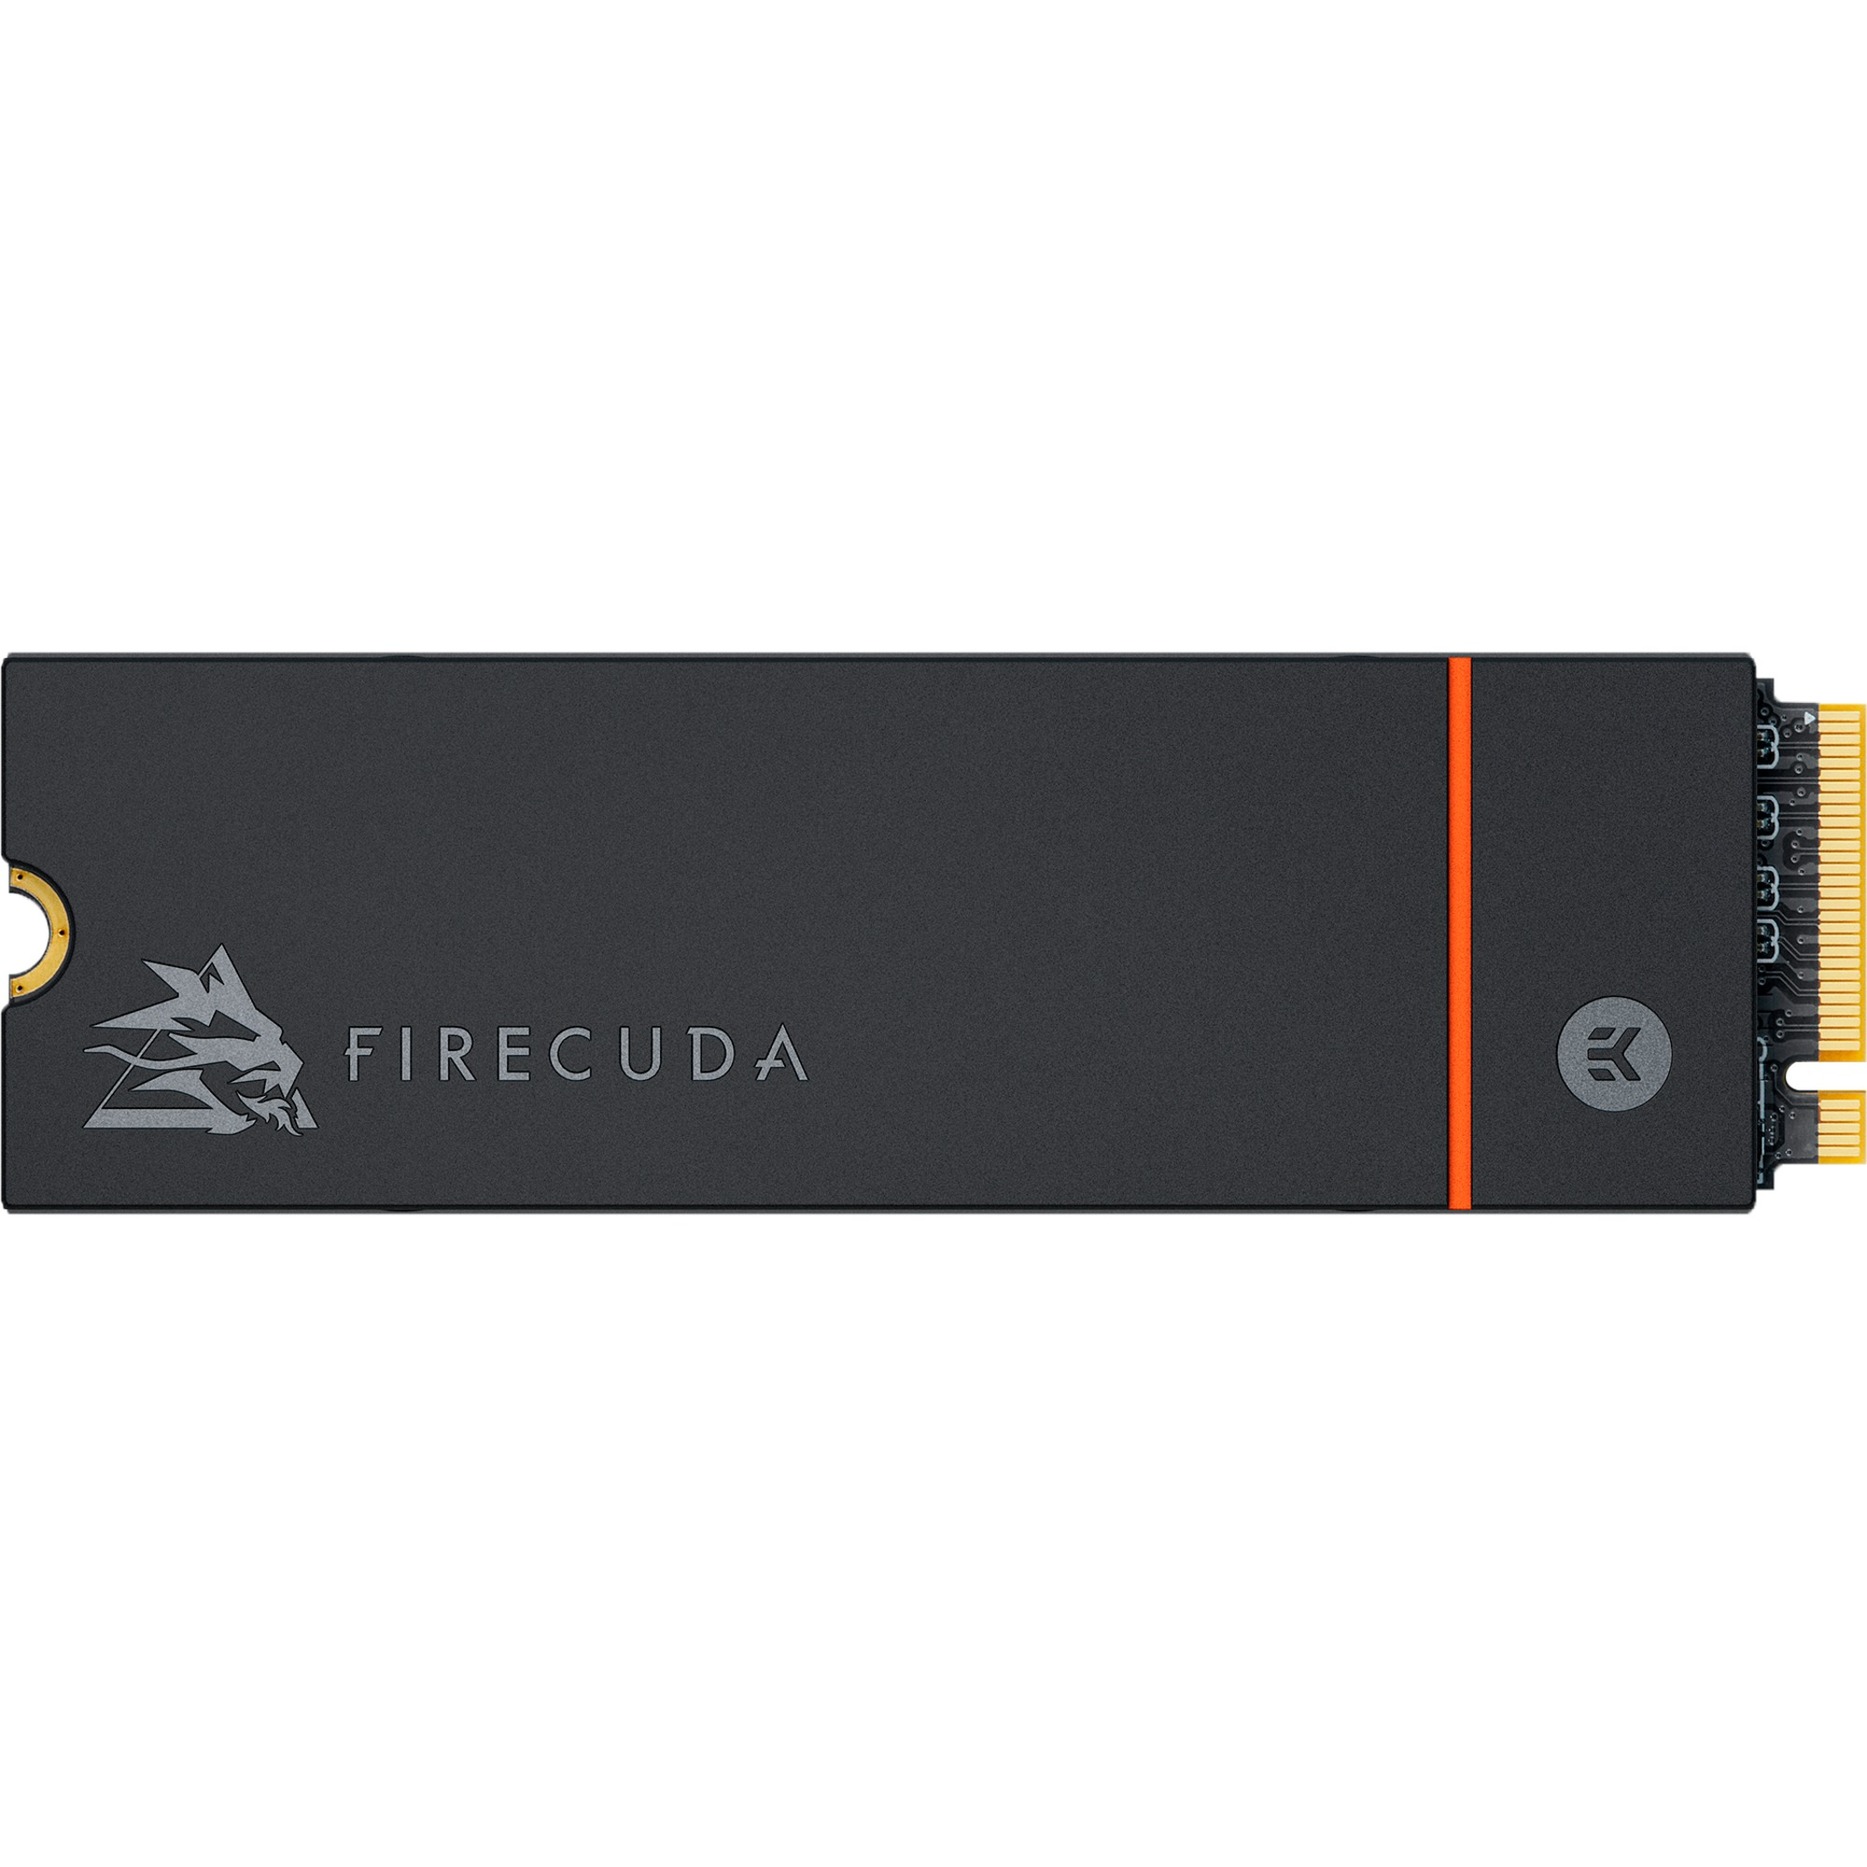 Image of Alternate - FireCuda 530 1 TB mit Kühlkörper, SSD online einkaufen bei Alternate